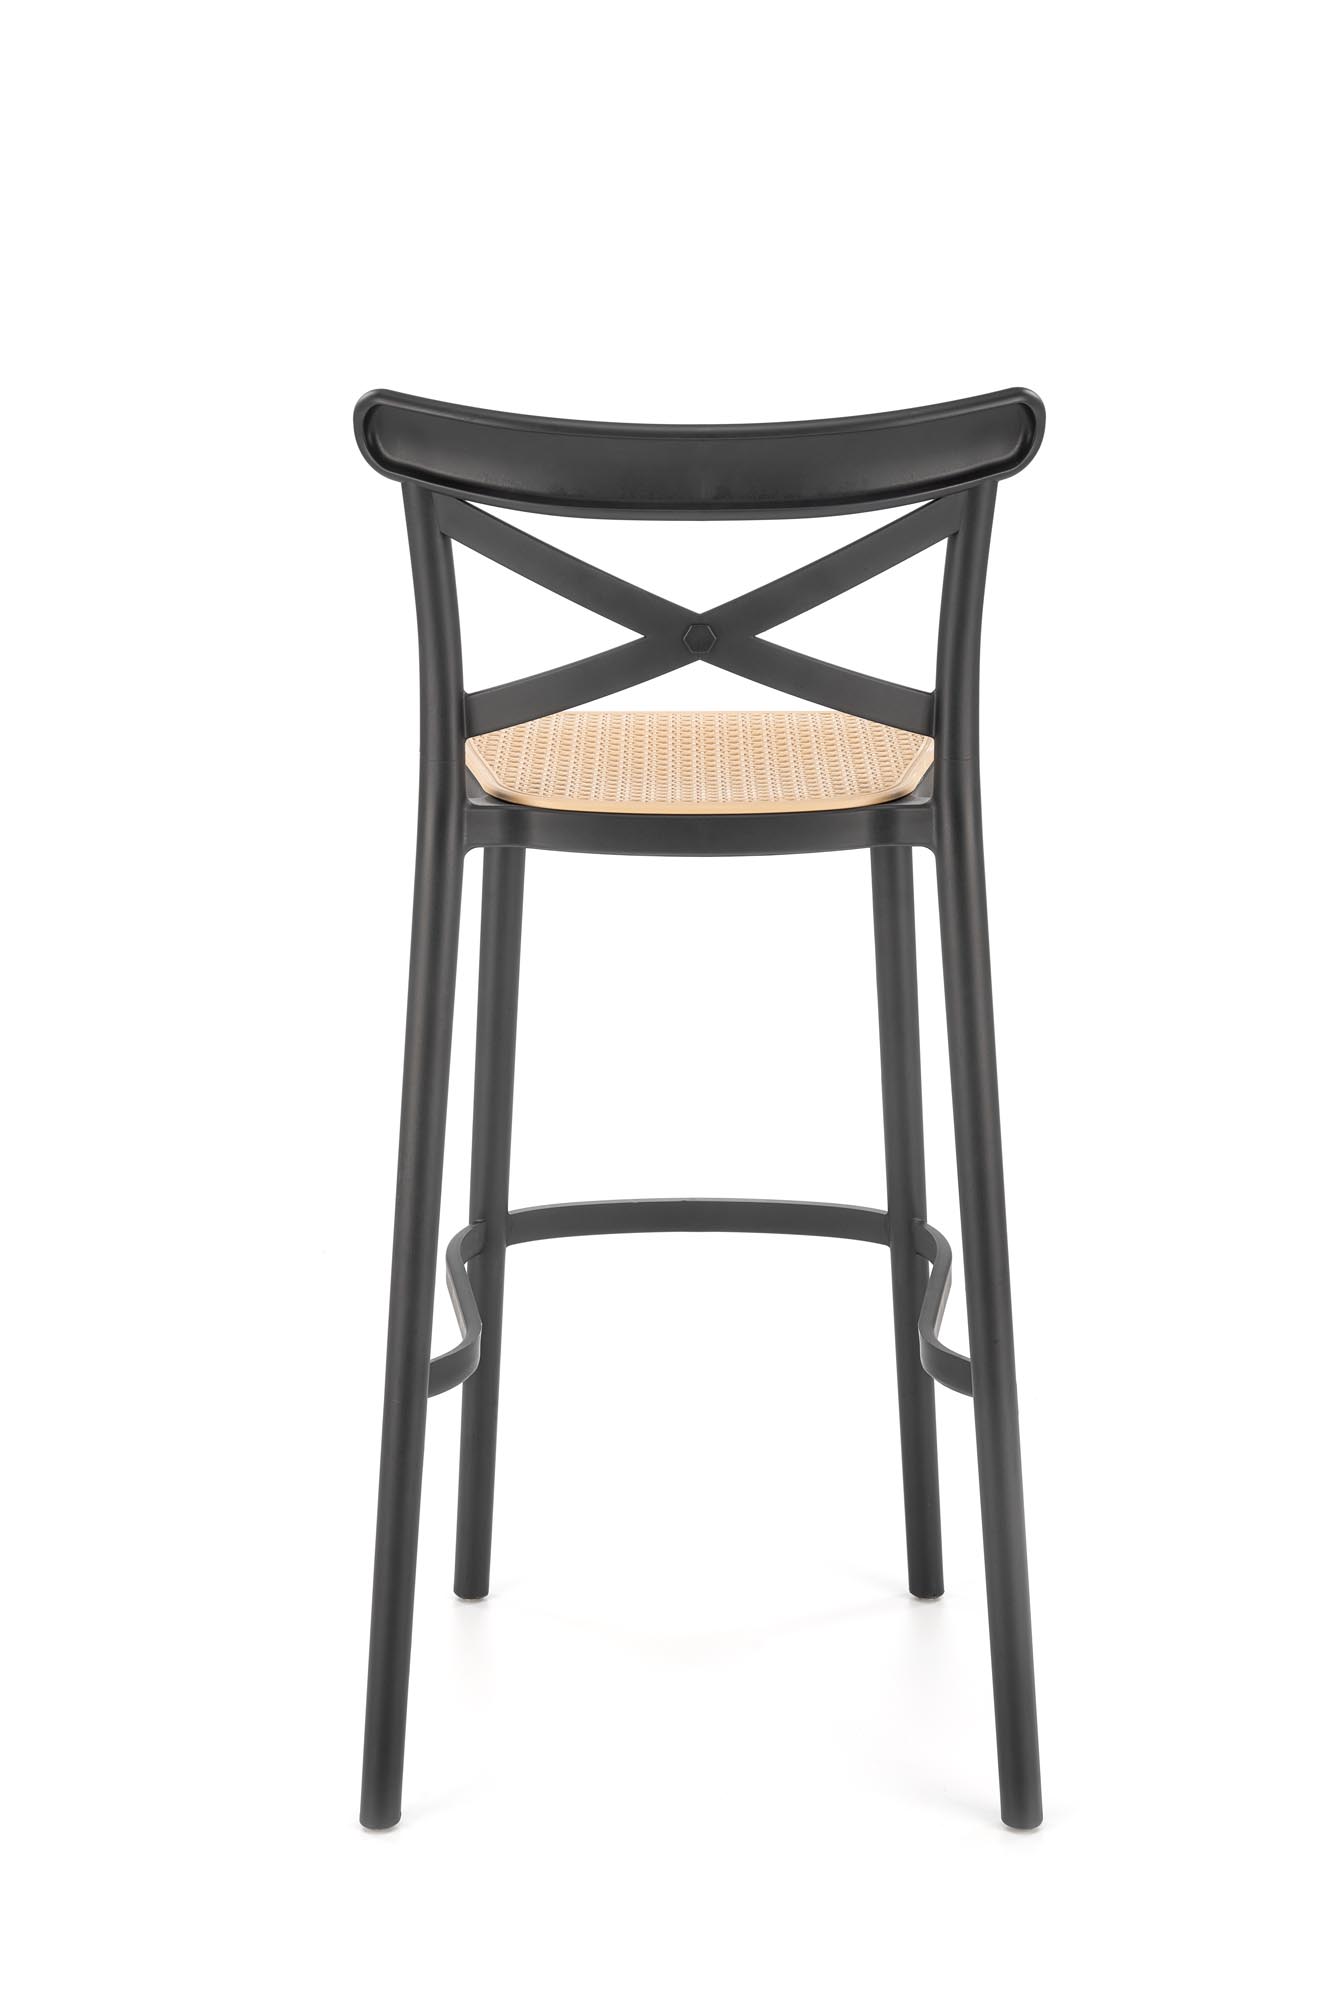 H111 Barová židle Fekete / barna Barová židle z tworzywa sztucznego h111 - Fekete / barna